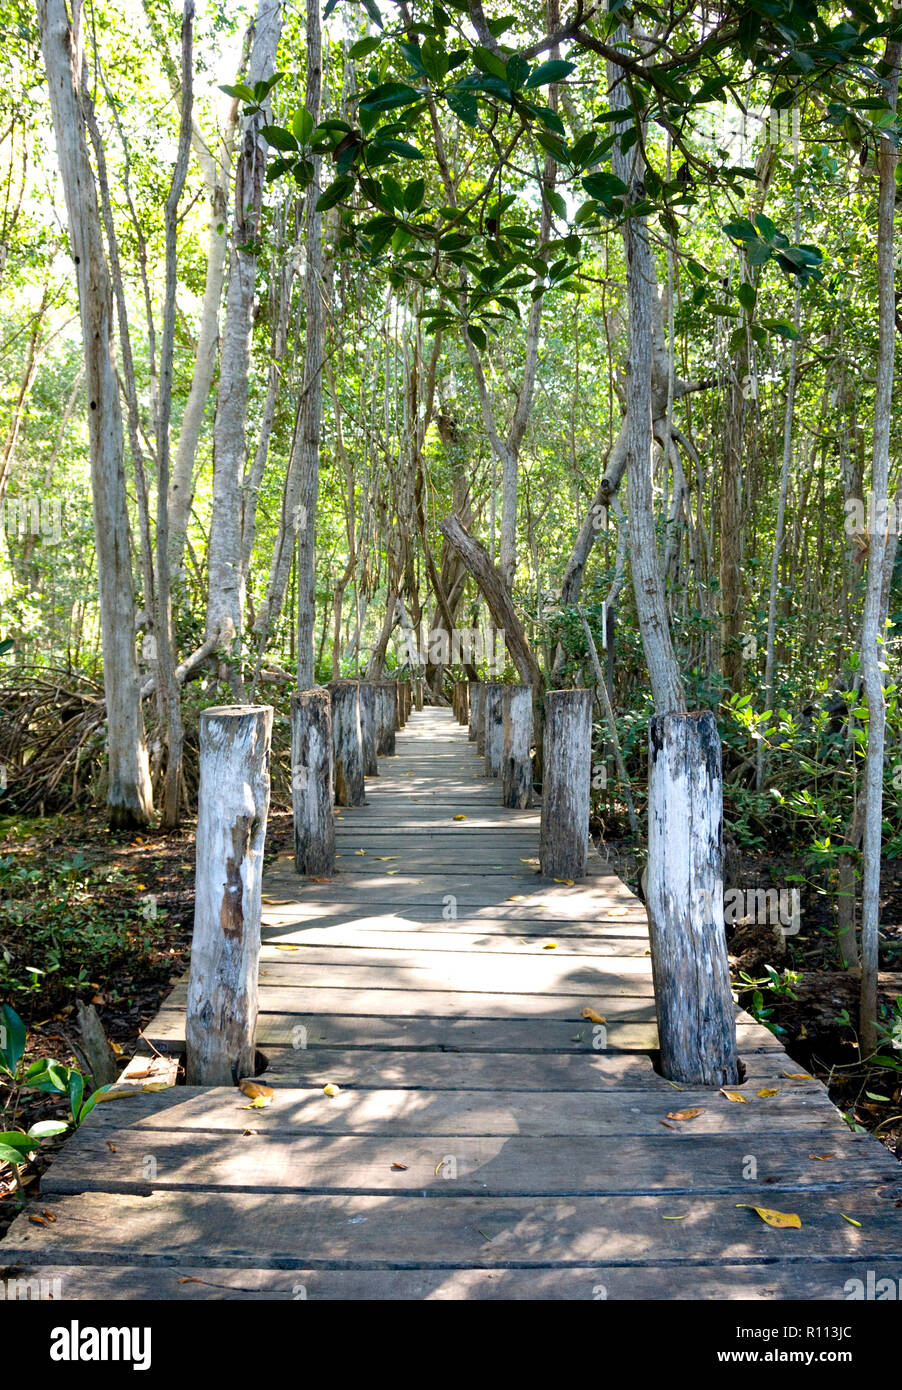 Promenade sentier en bois sous les arbres de la jungle luxuriante mène à la mangrove, Celestun, Mexique Banque D'Images